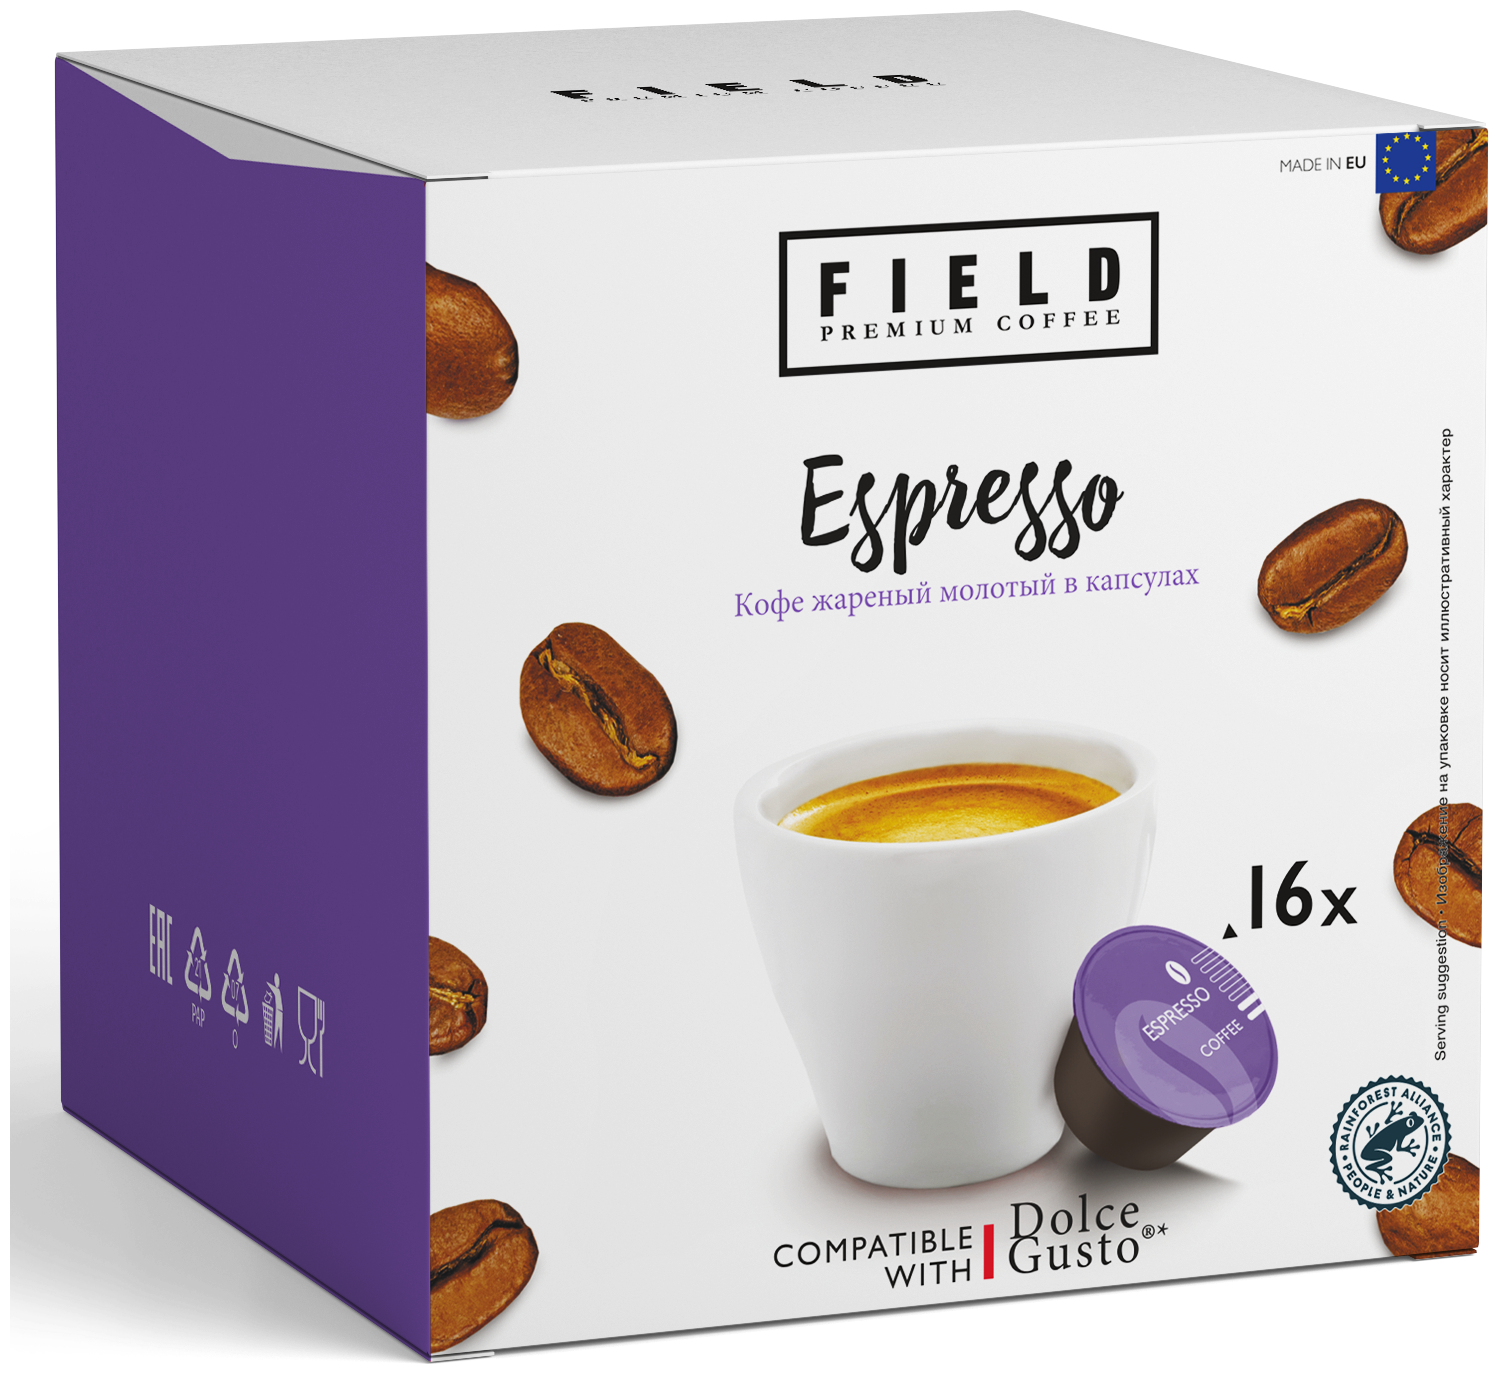 Кофе в капсулах Dolce Gusto Espresso 48 шт для кофемашины "FIELD" Набор 3 уп. по 16 шт Эспрессо - фотография № 1